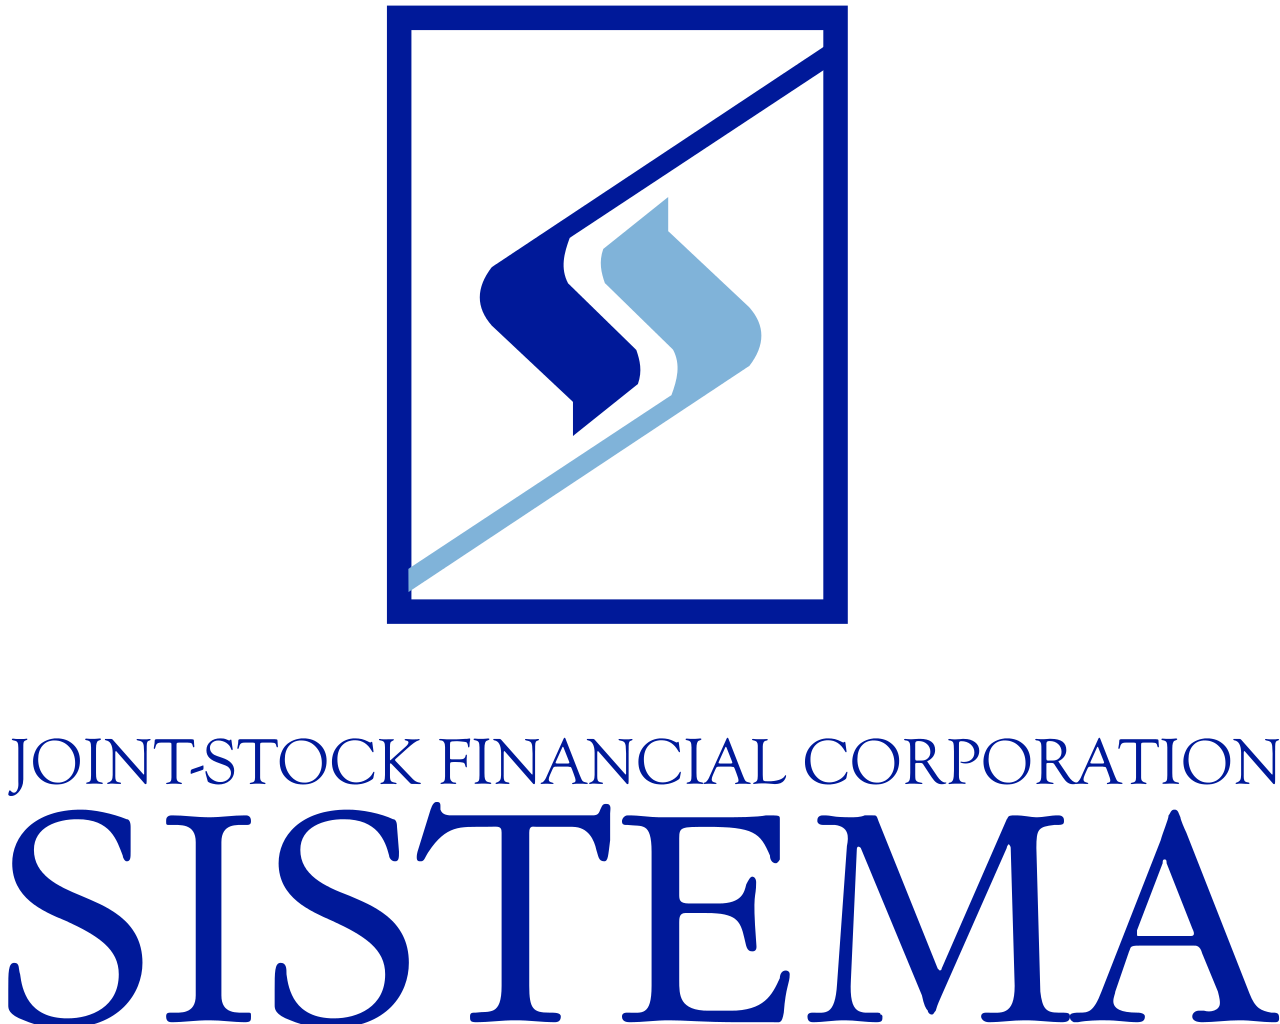 SISTEMA CAPITAL LLC